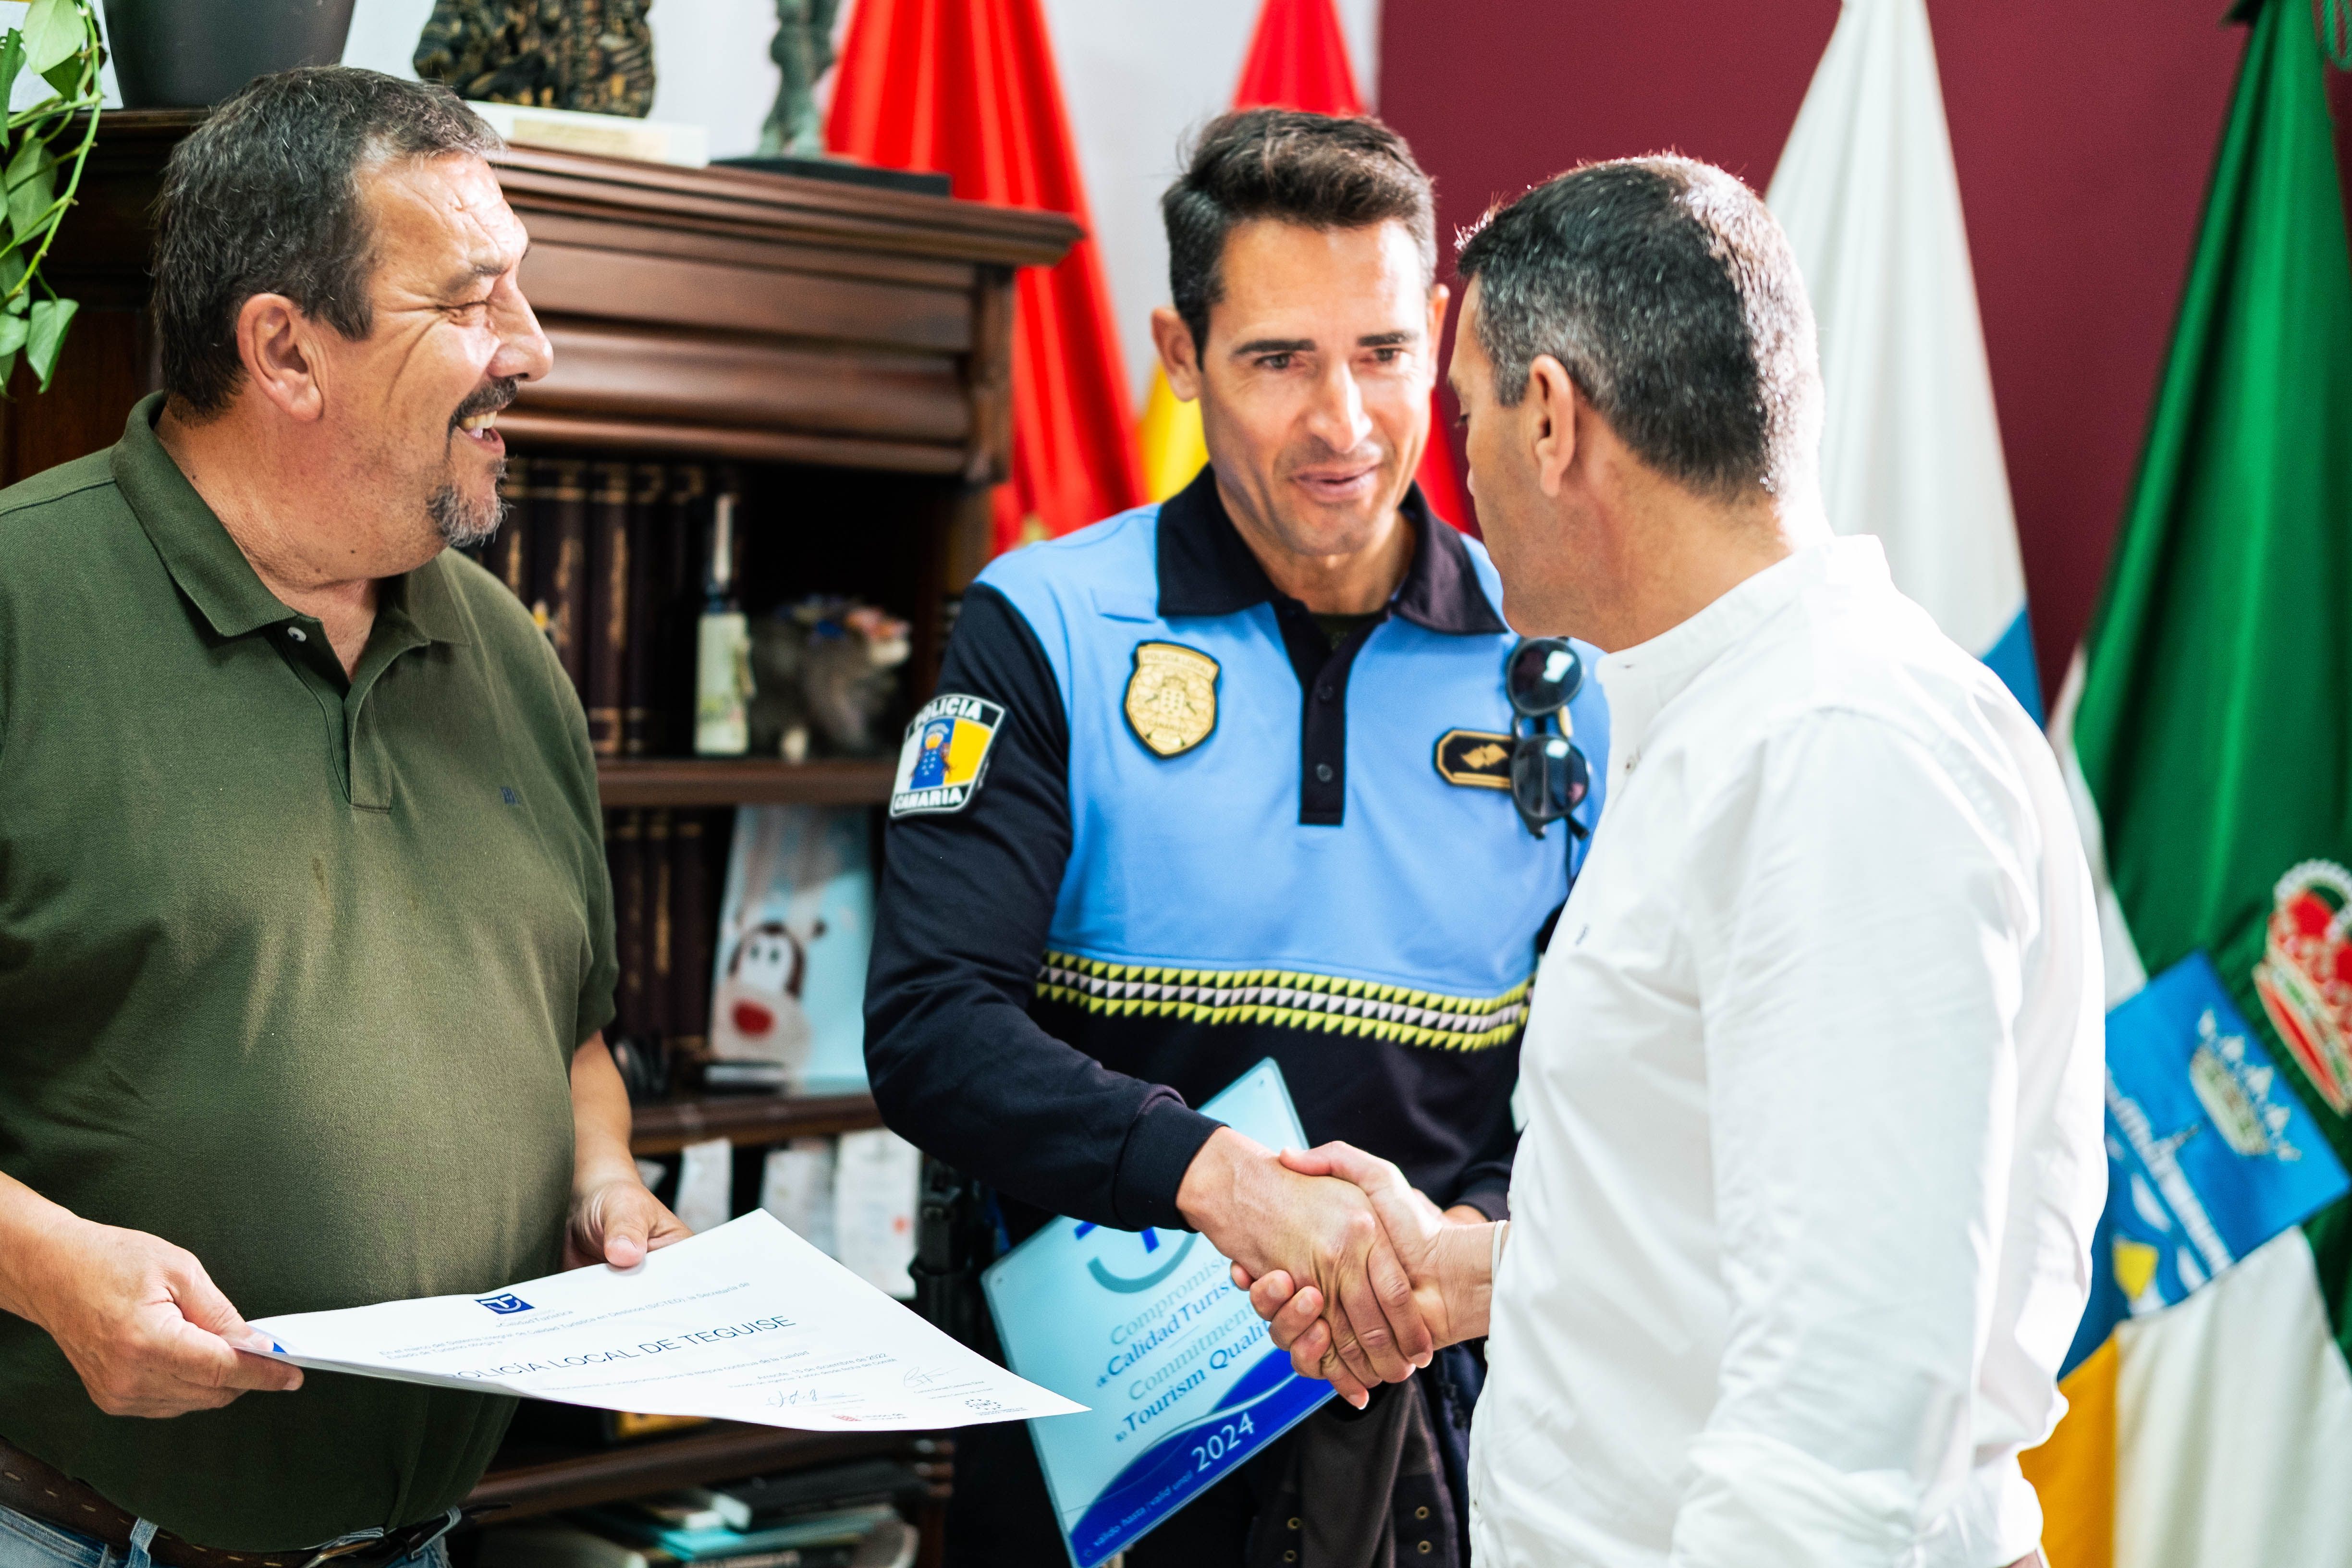 El alcalde de Teguise, Oswaldo Betancort, con agentes de la Policía Local del municipio, galardonados con el distintivo de 'Compromiso de Calidad Turística'